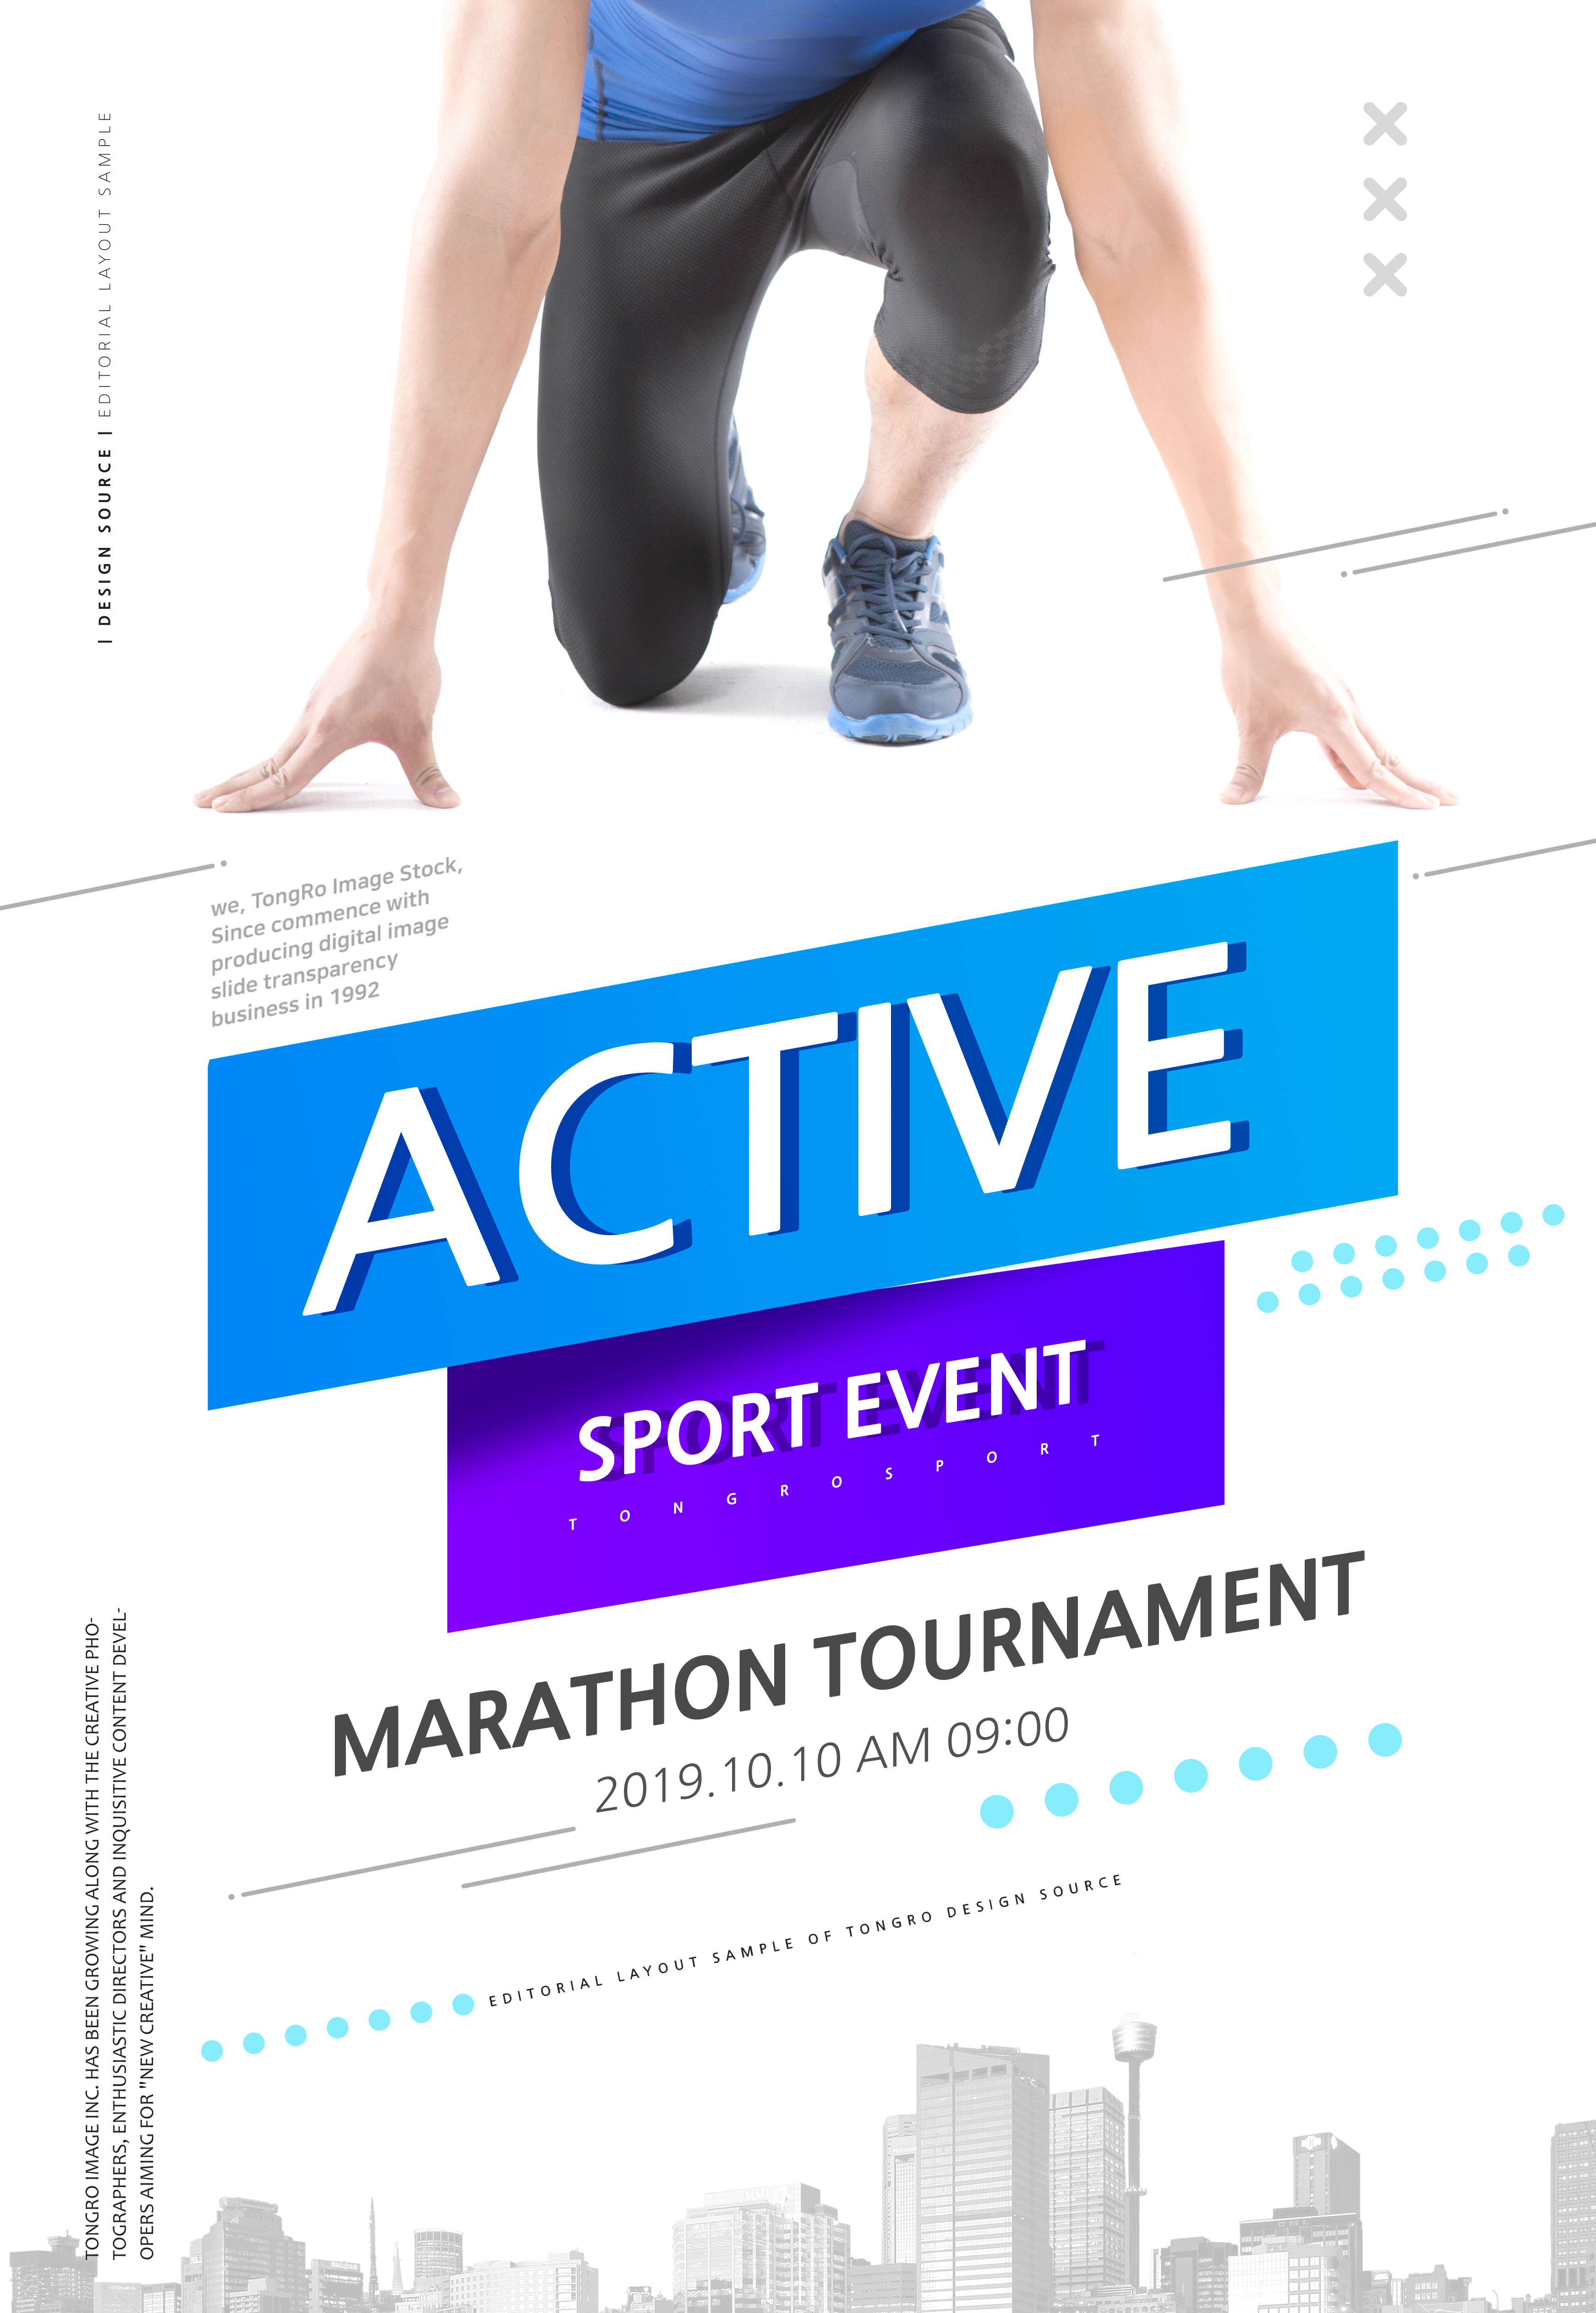 马拉松长跑比赛体育运动宣传广告海报模板插图